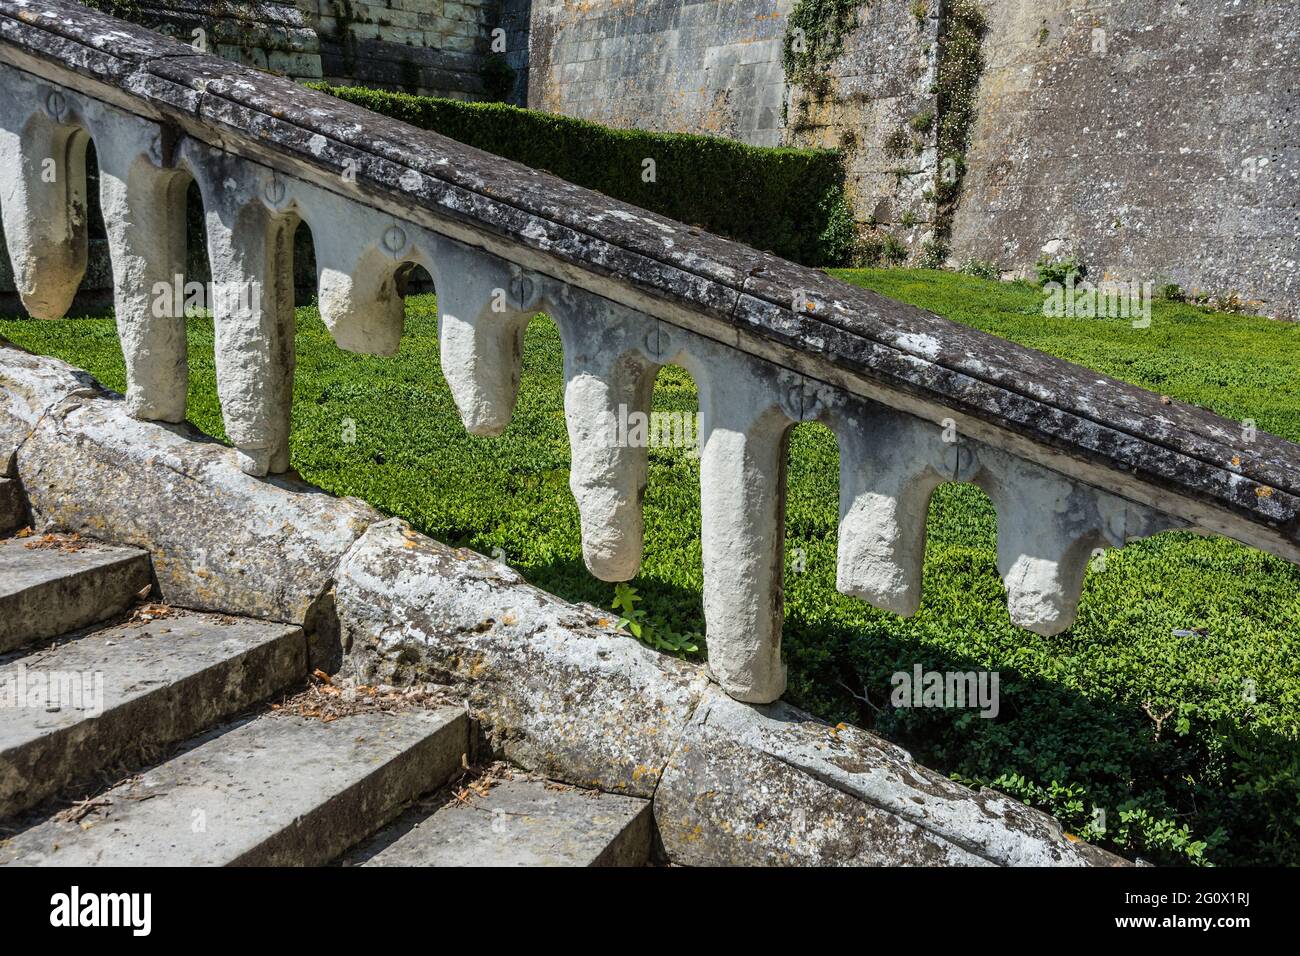 Balaustrada de piedra caliza de toba erosionada en el acercamiento de la escalera al castillo de Saint-Aignan, Loir-et-Cher (41), Francia. Foto de stock